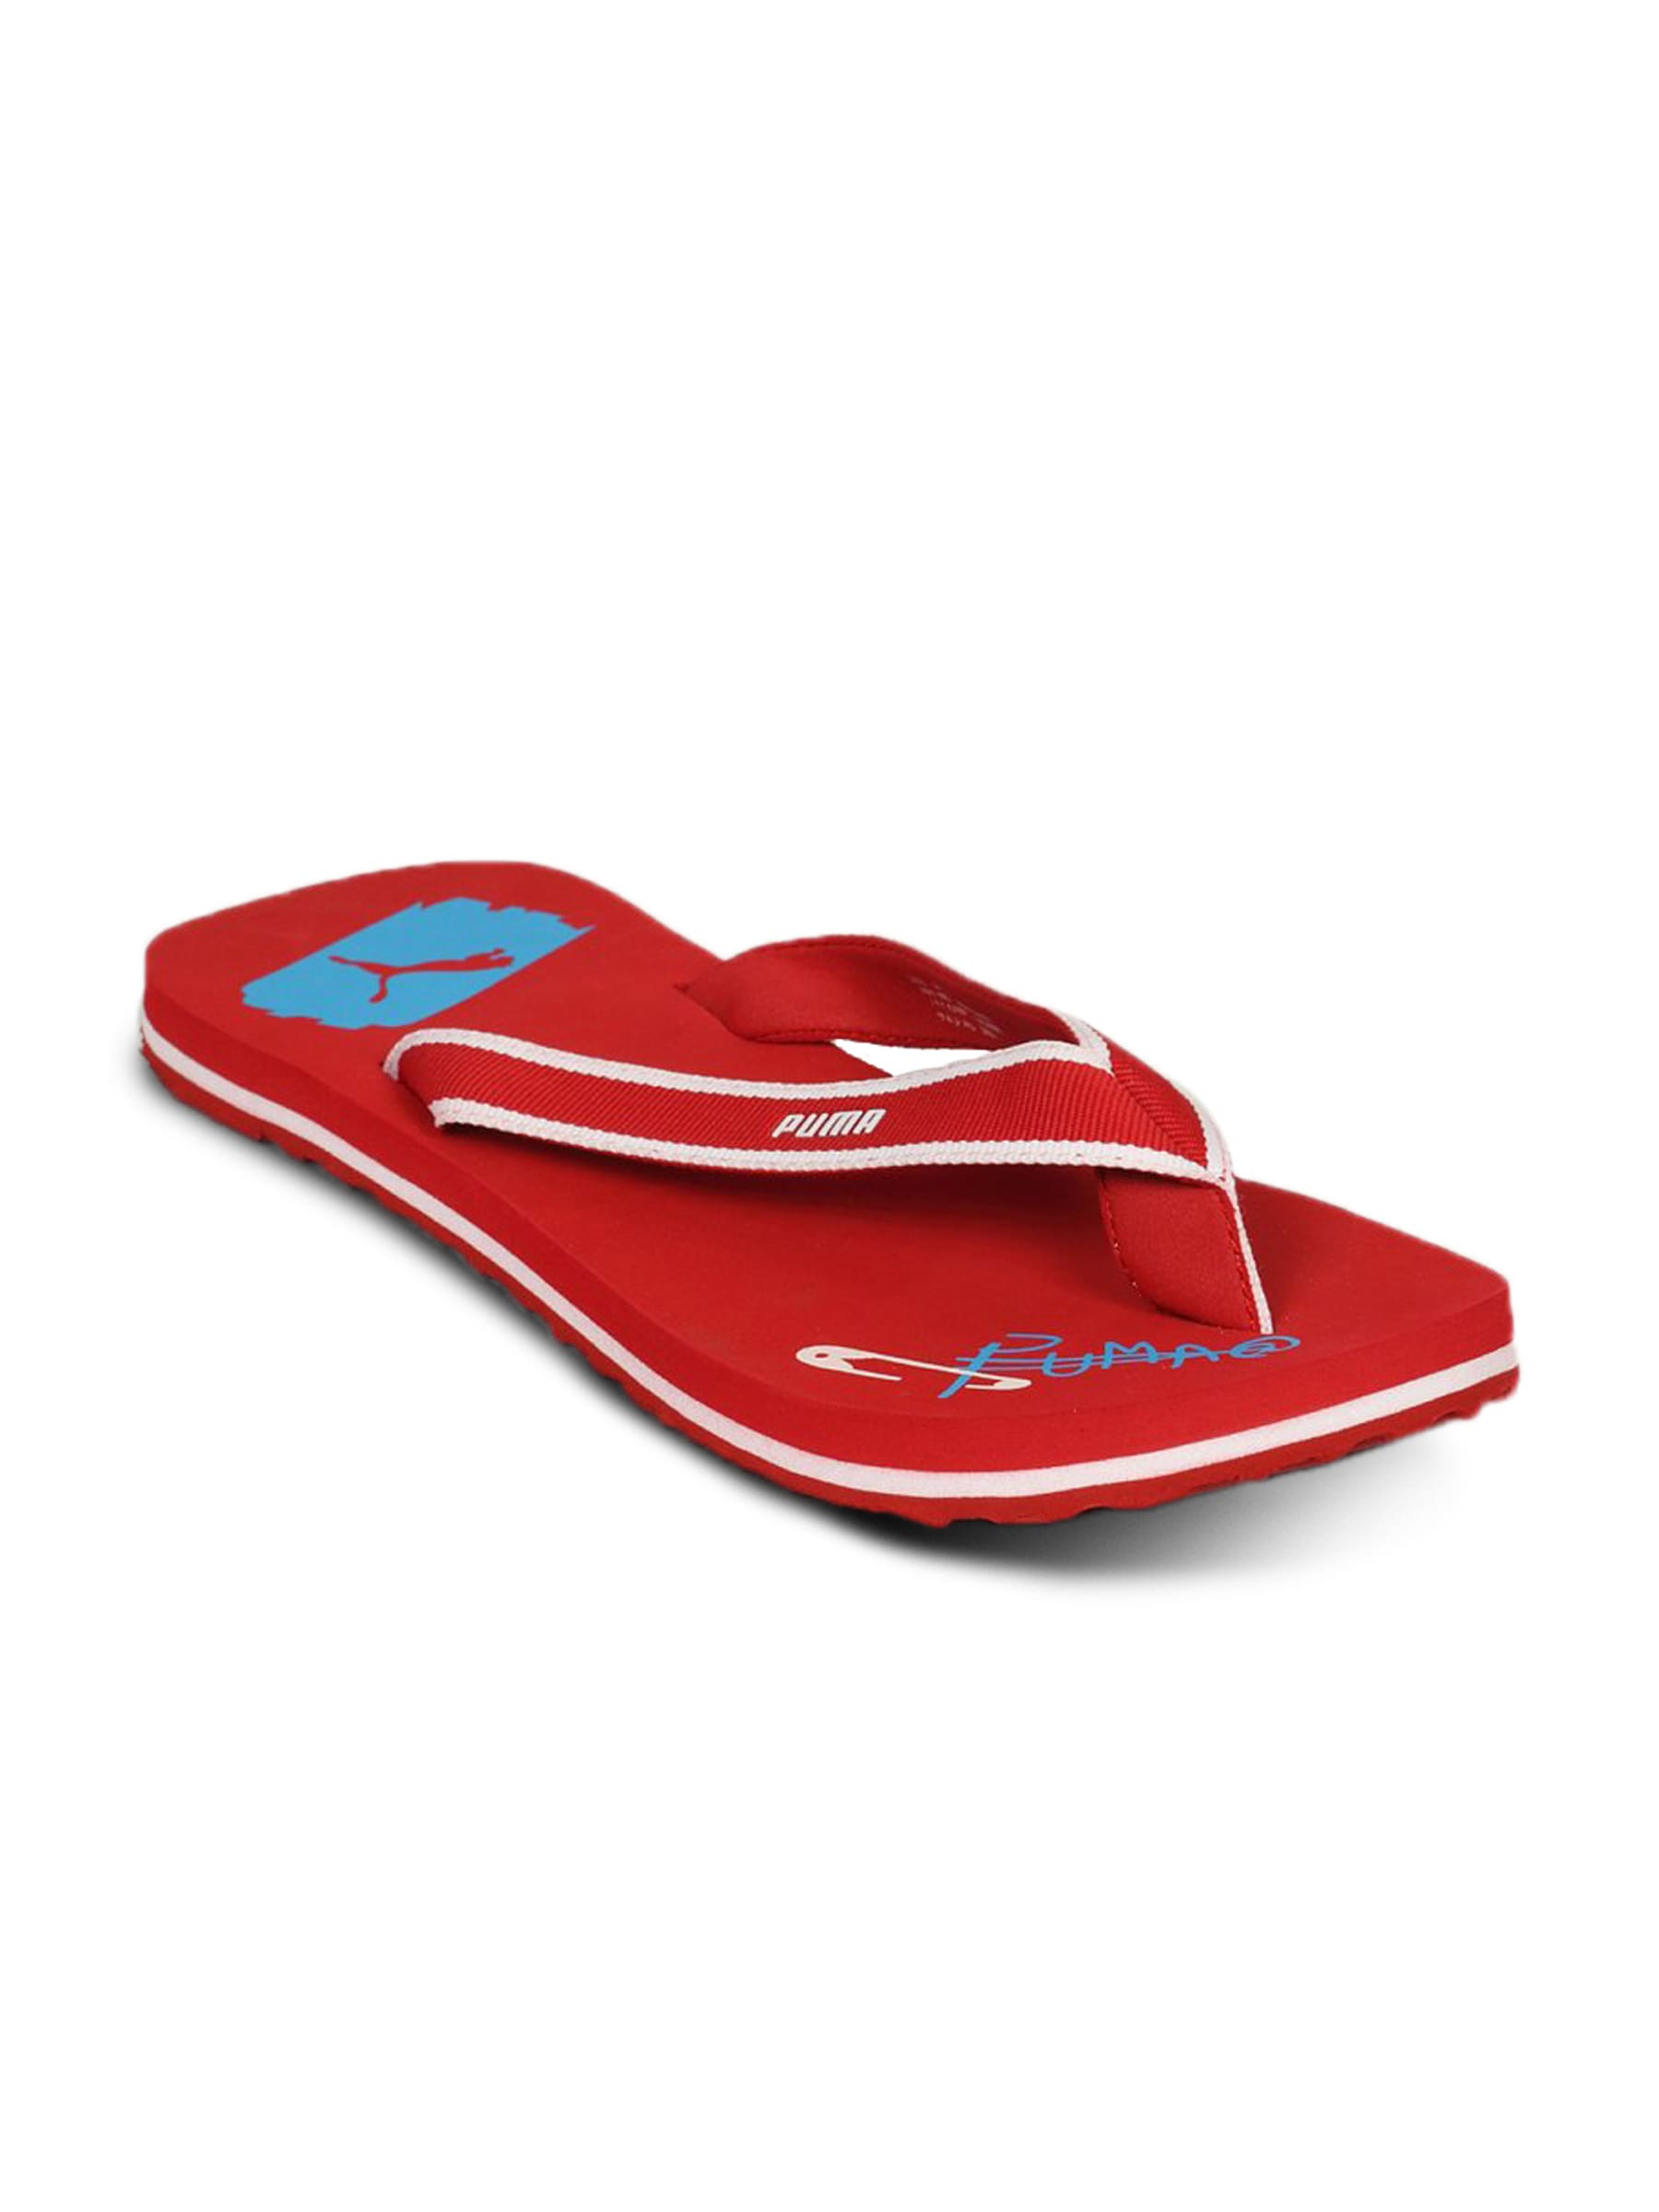 Puma Unisex Popart Red Flip Flop